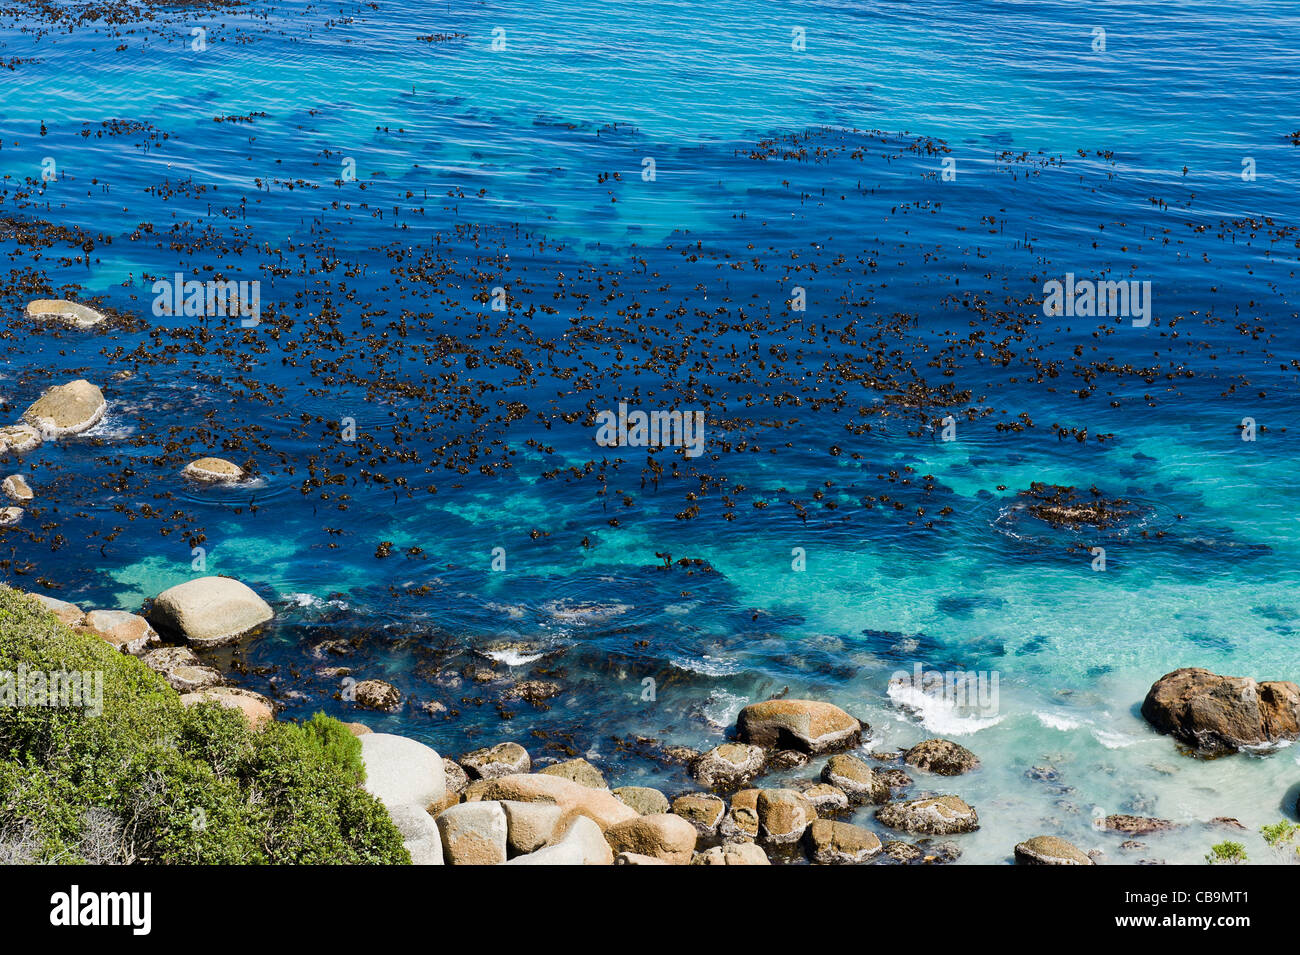 Le varech, un brown algues marines, le Parc National de Table Mountain zone maritime protégée au sud de Cape Town Afrique du Sud Banque D'Images